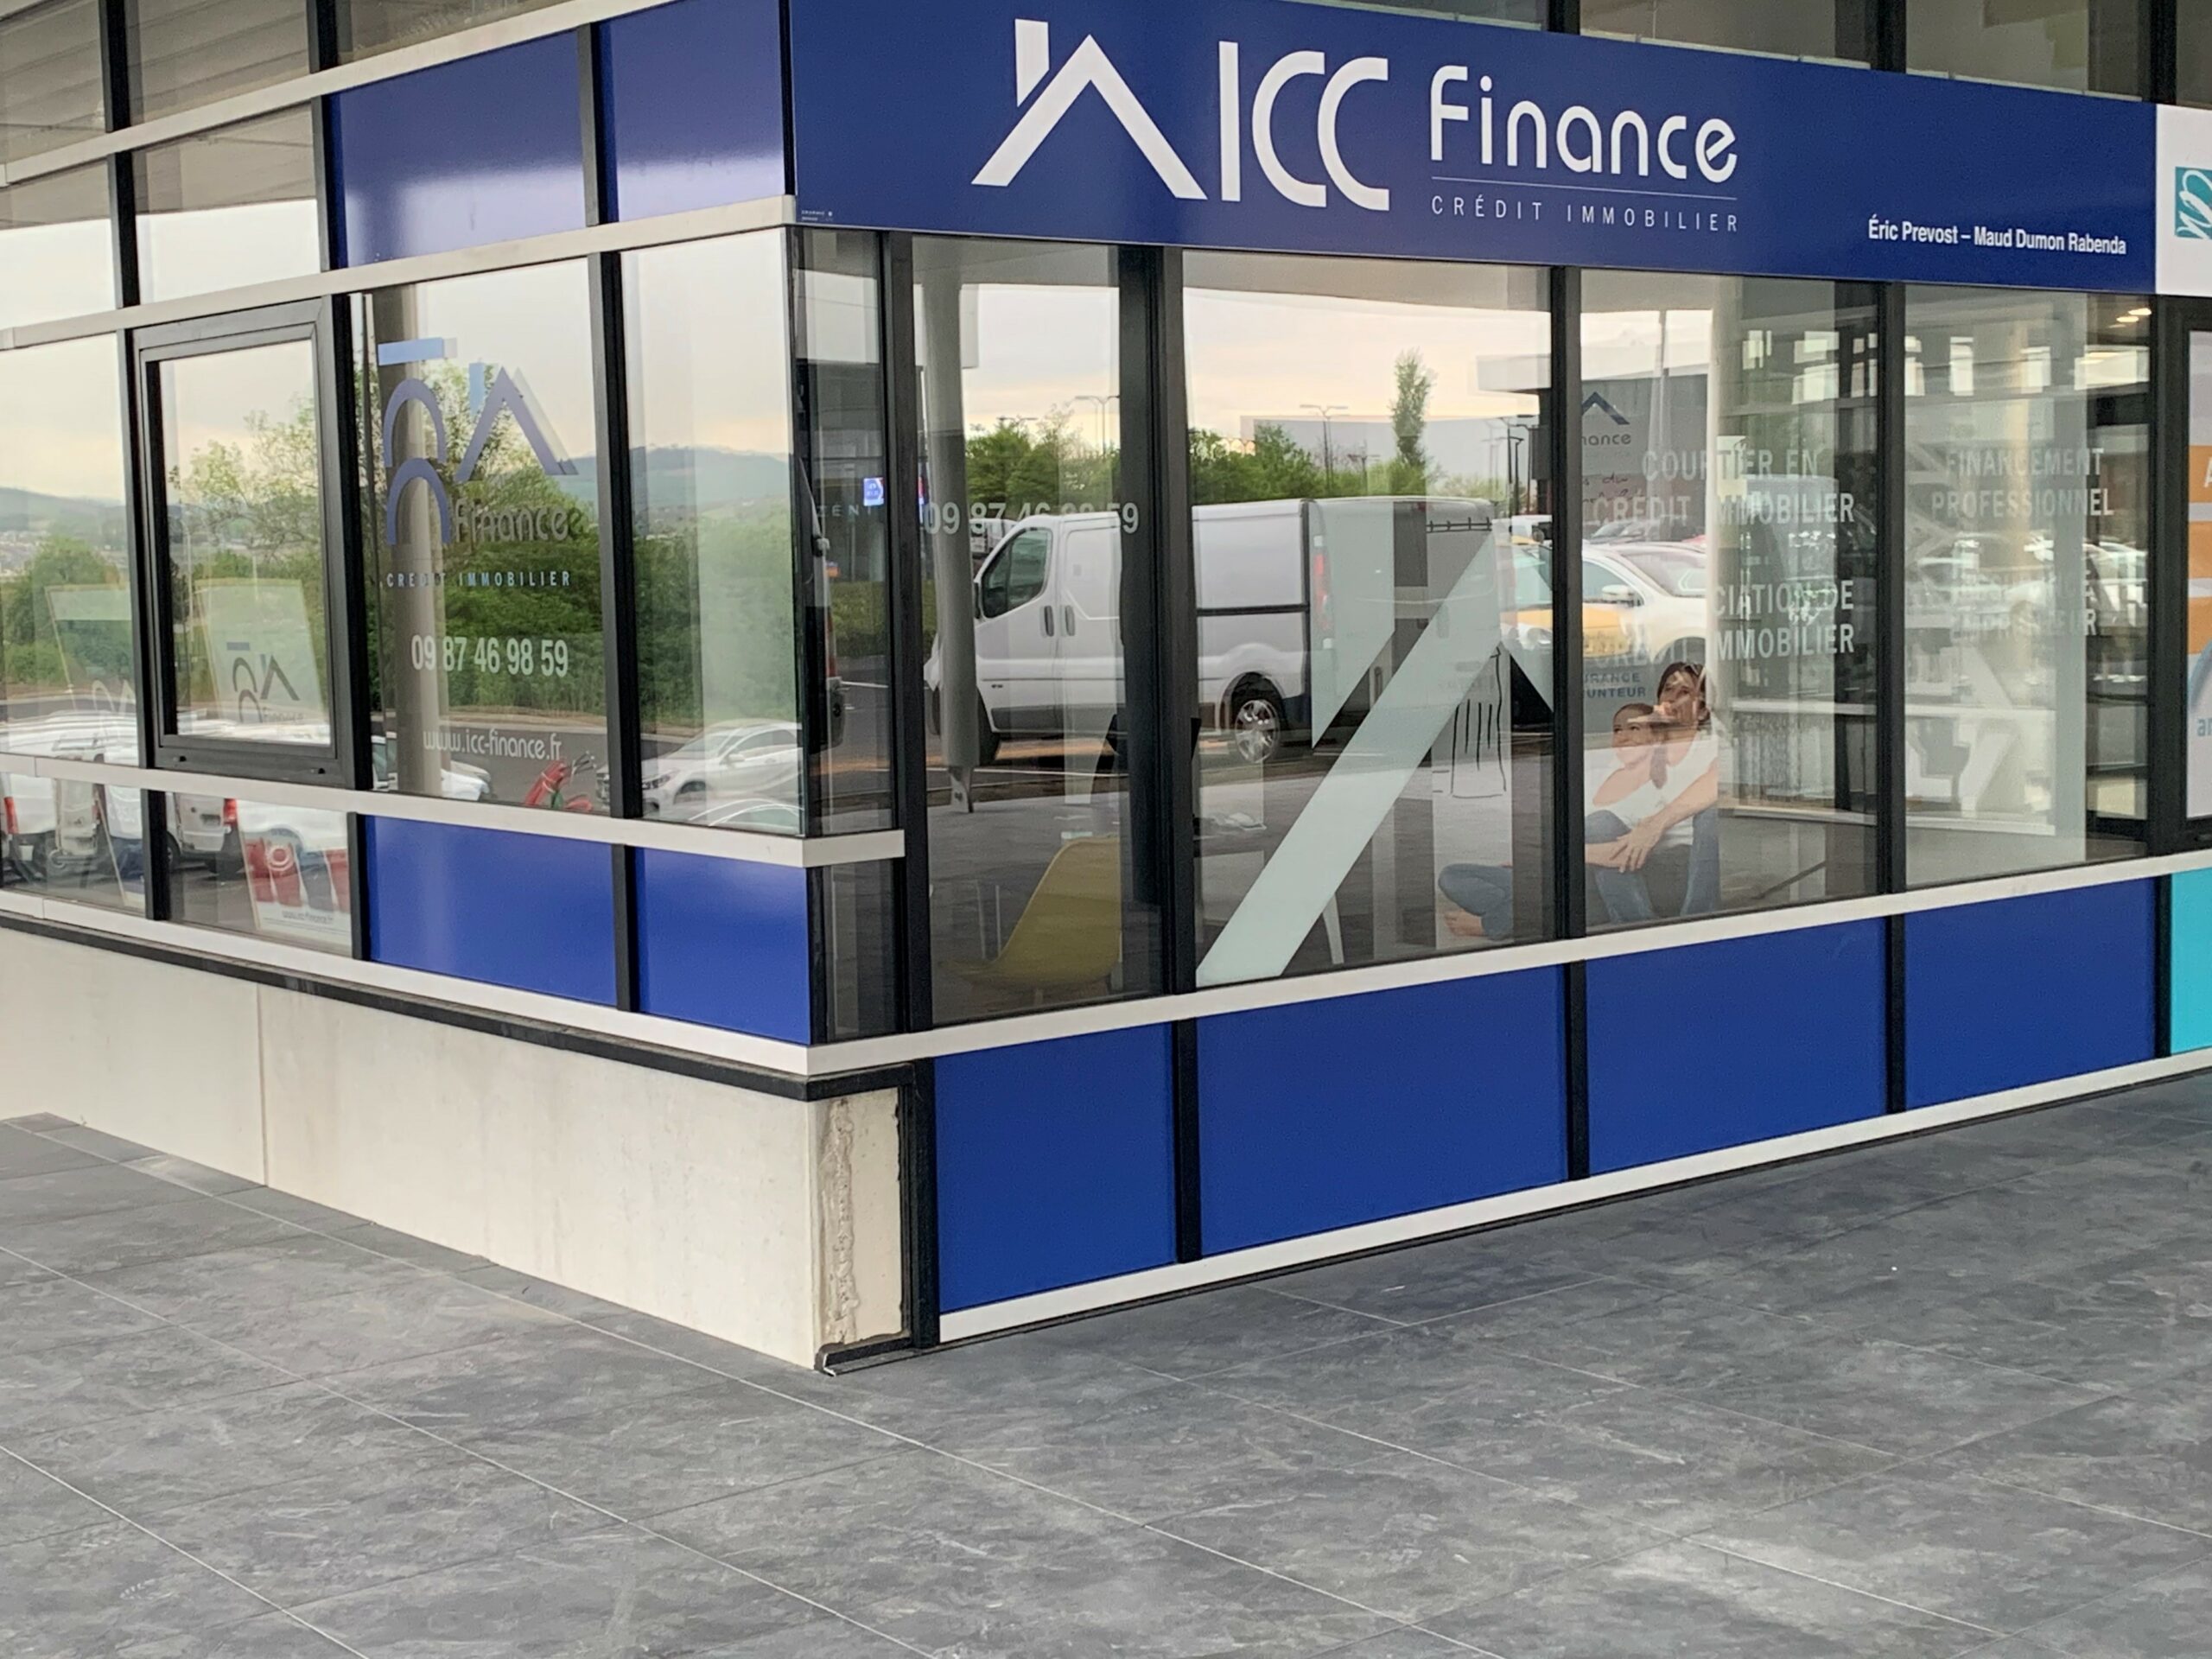 Exterieur ICC Finance Clermont-Ferrand Courtier en credit immobilier